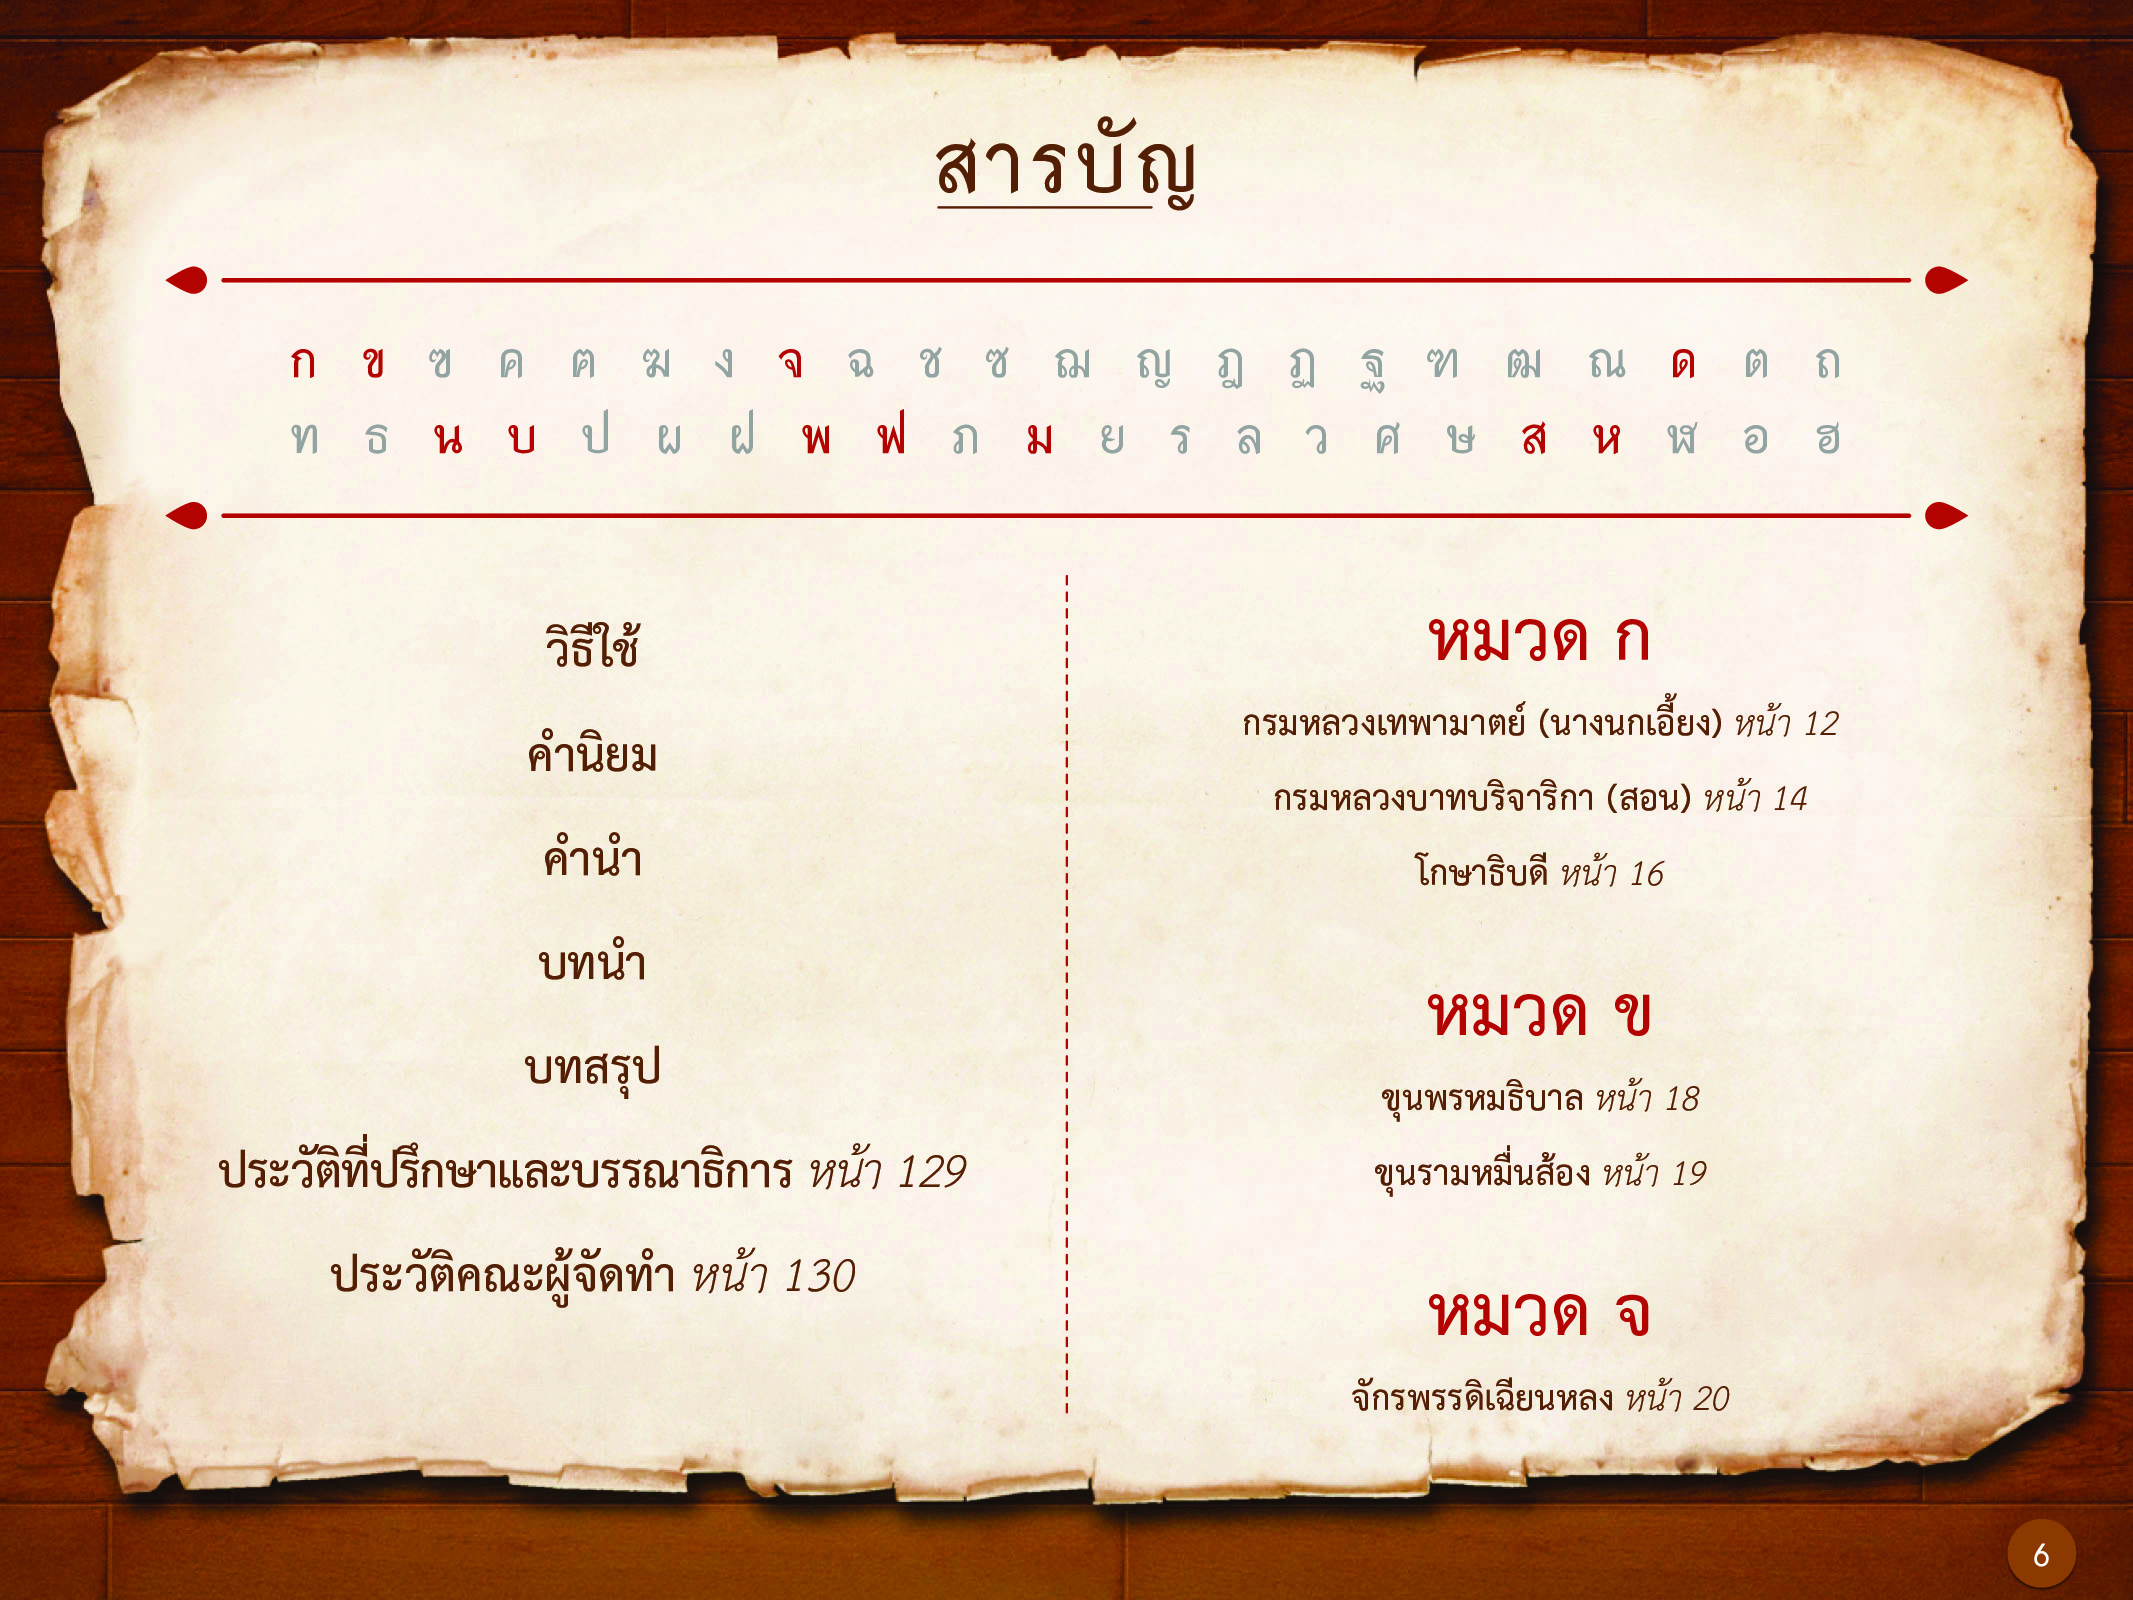 ประวัติศาสตร์กรุงธนบุรี ./images/history_dhonburi/6.jpg